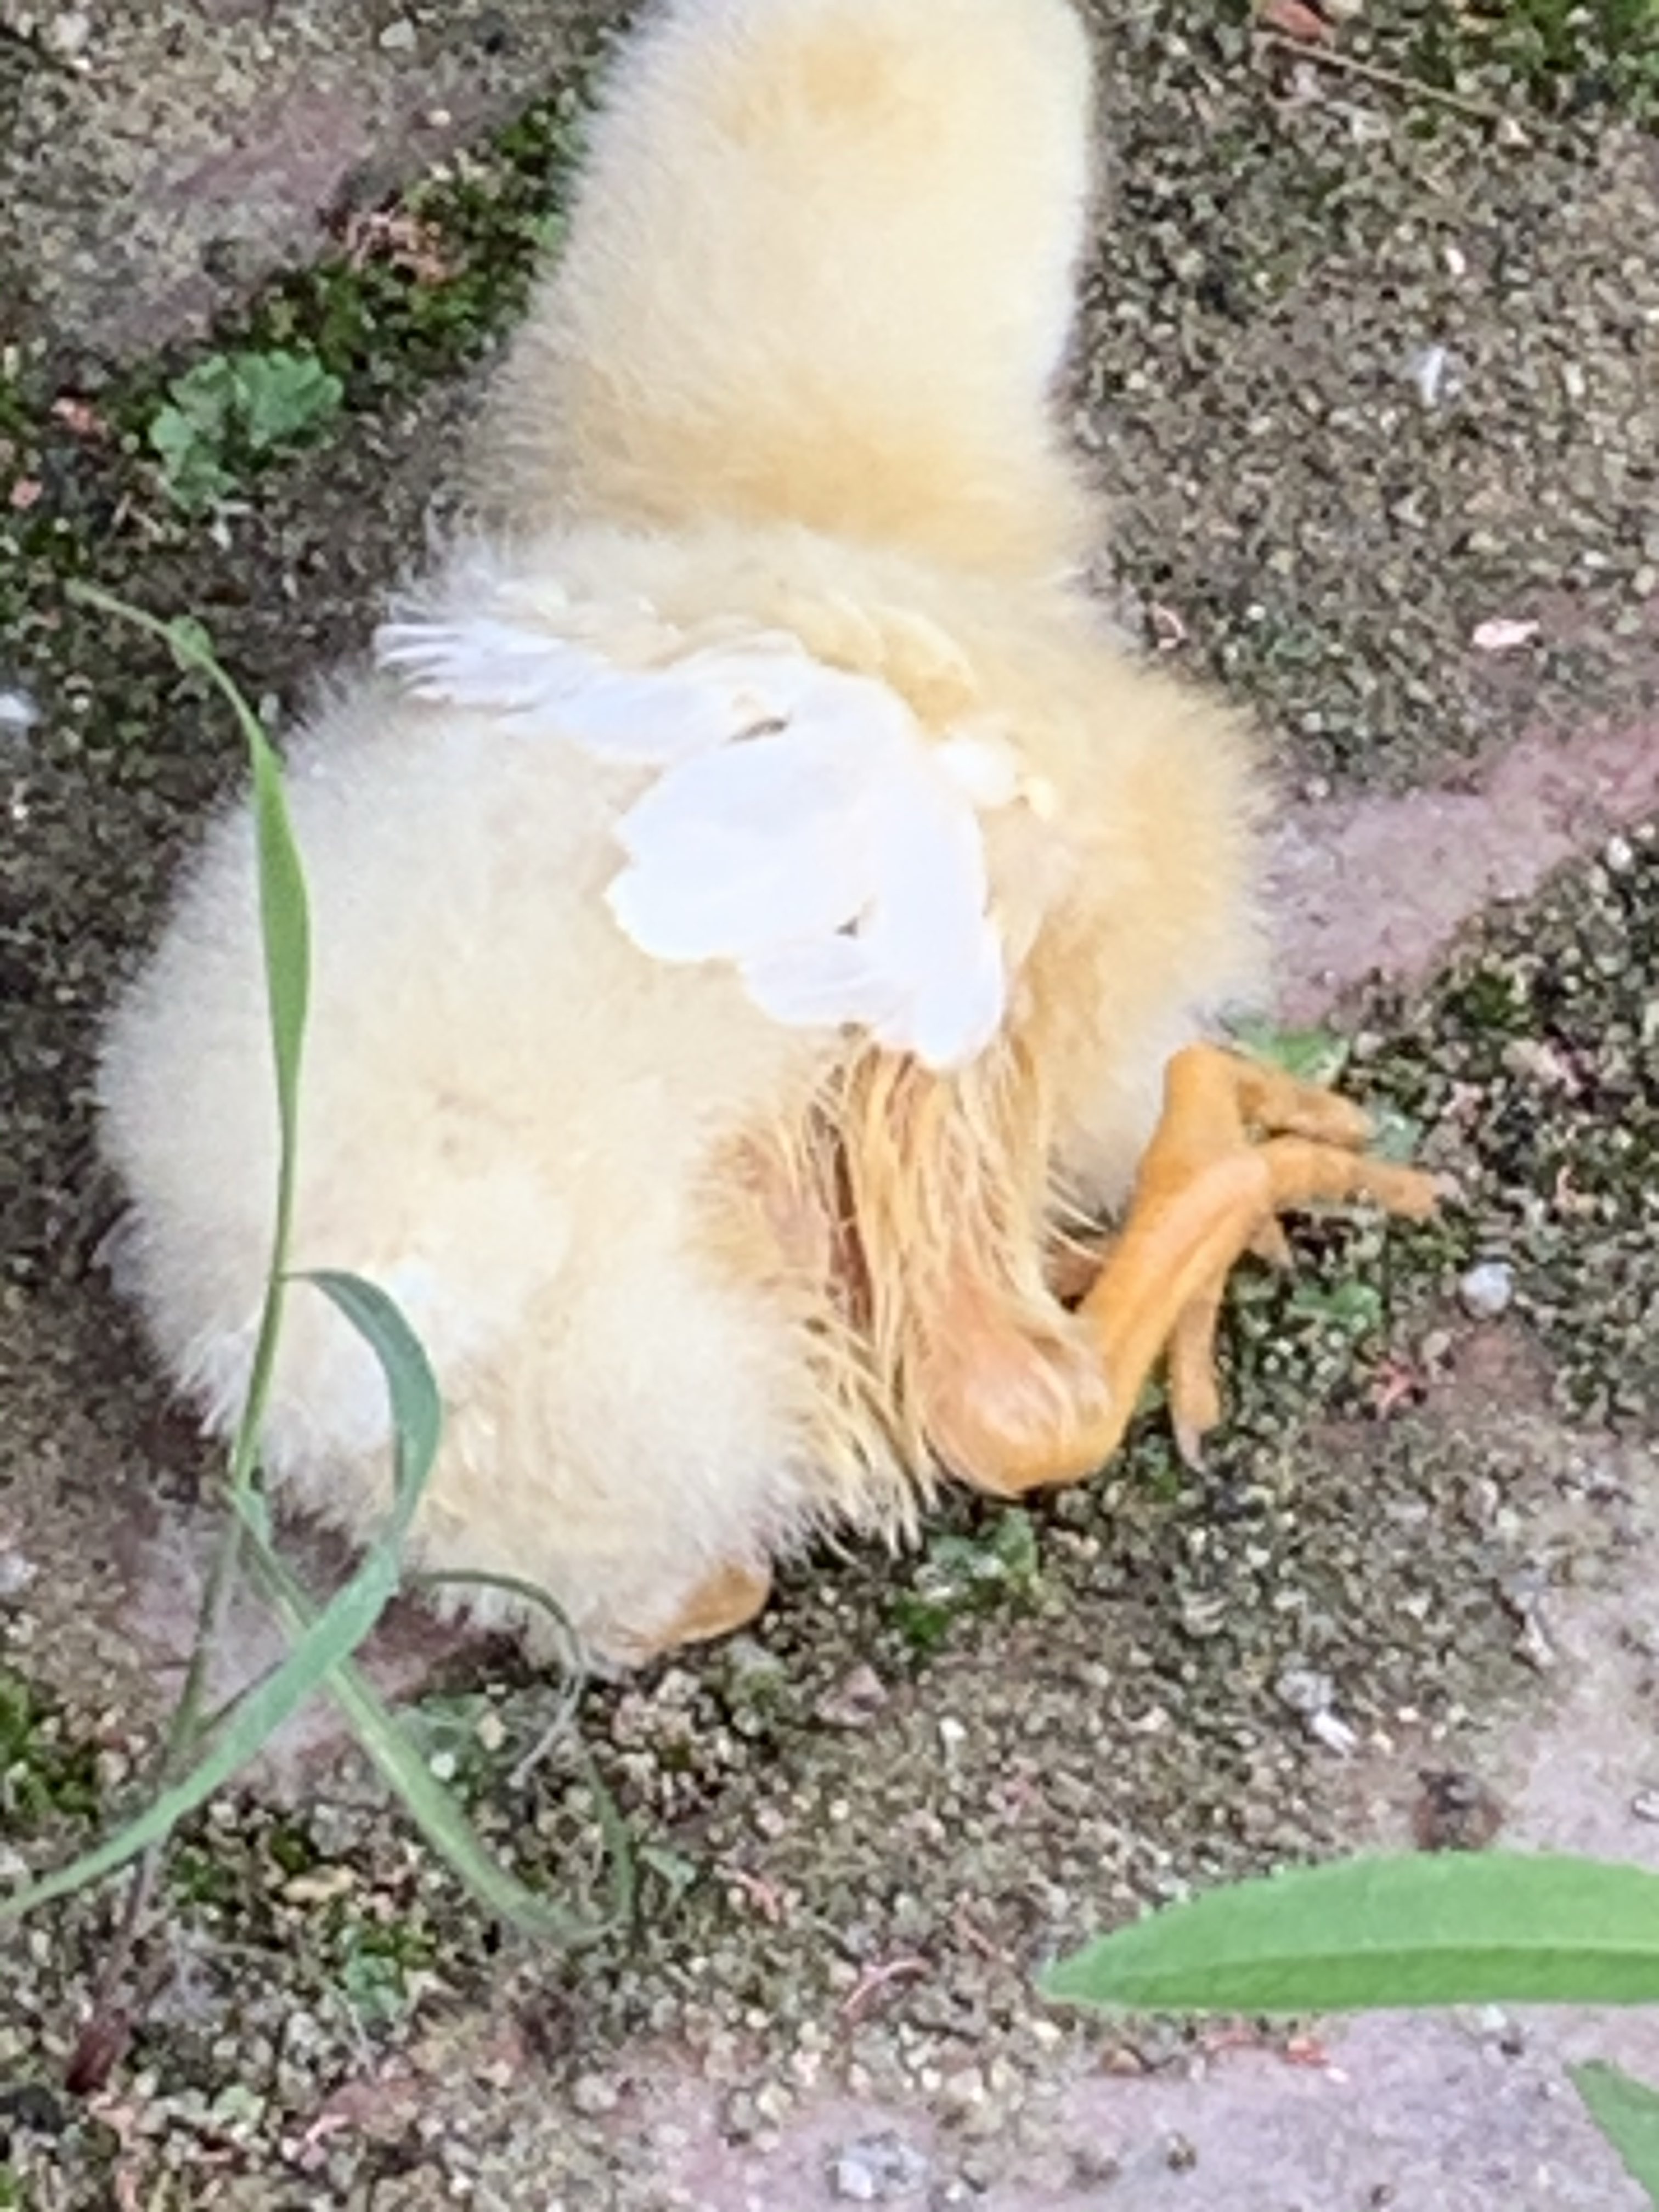 我的小鸡昨天下午从高处摔了一下没一会就站不起来